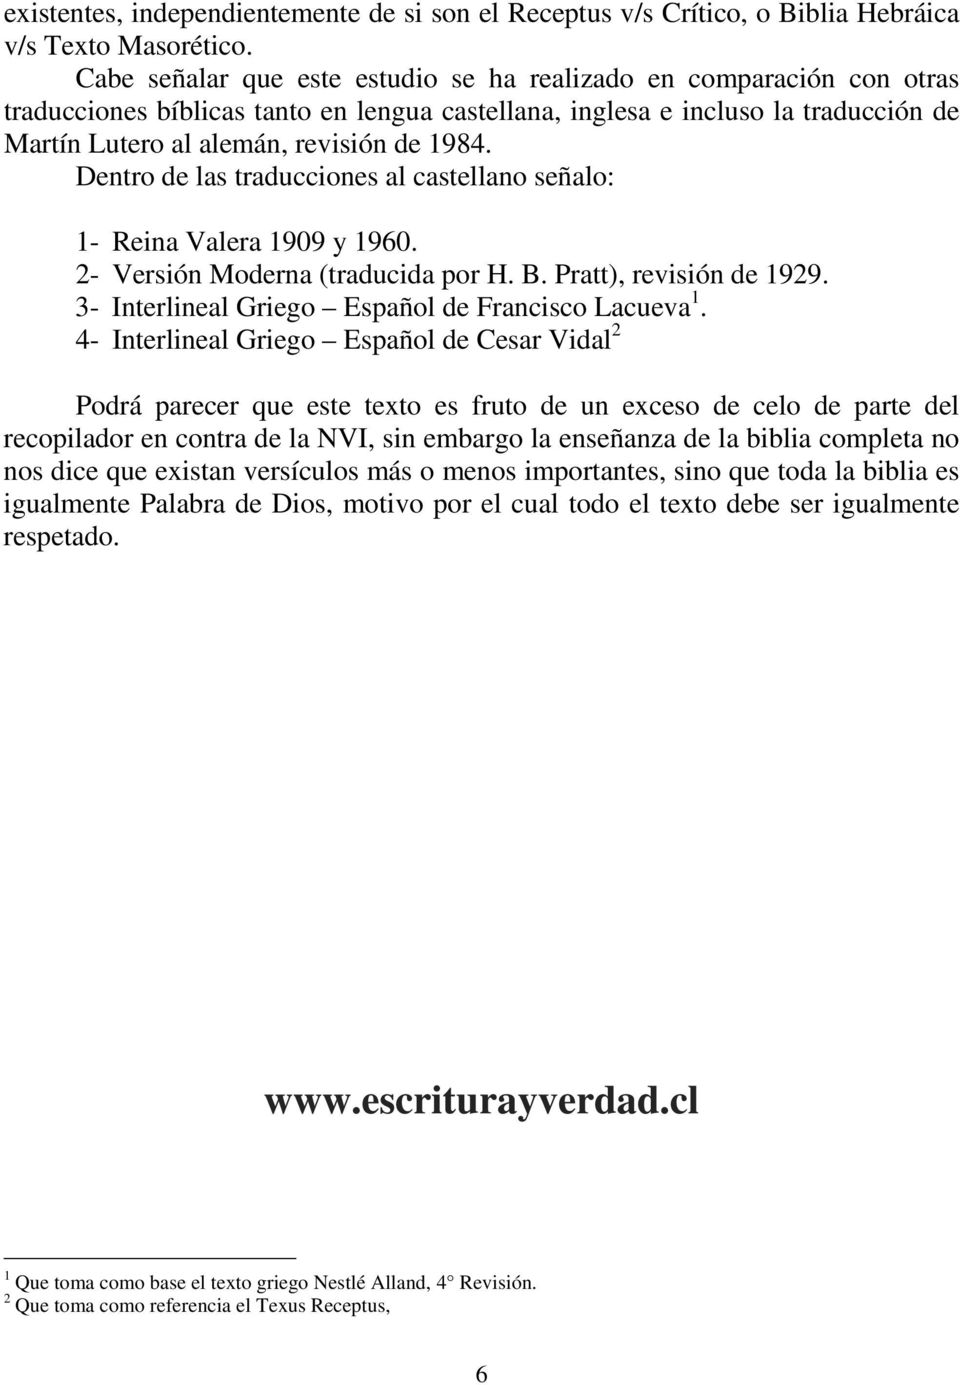 Dentro de las traducciones al castellano señalo: 1- Reina Valera 1909 y 1960. 2- Versión Moderna (traducida por H. B. Pratt), revisión de 1929. 3- Interlineal Griego Español de Francisco Lacueva 1.